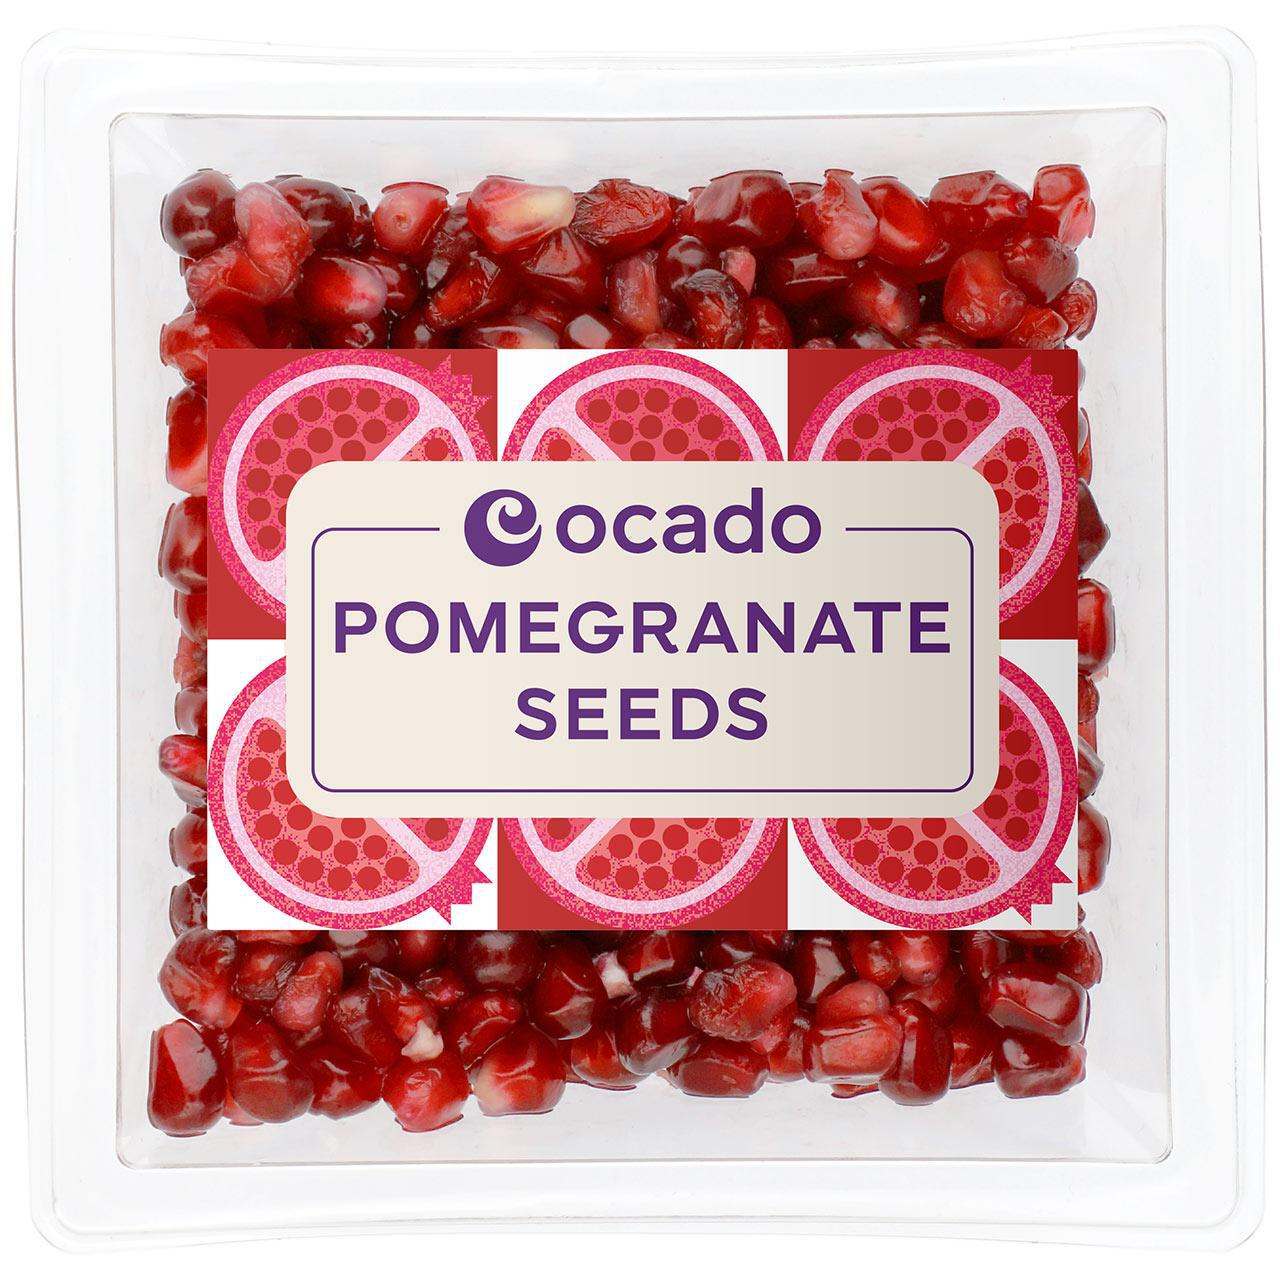 Ocado Pomegranate Seeds 250g